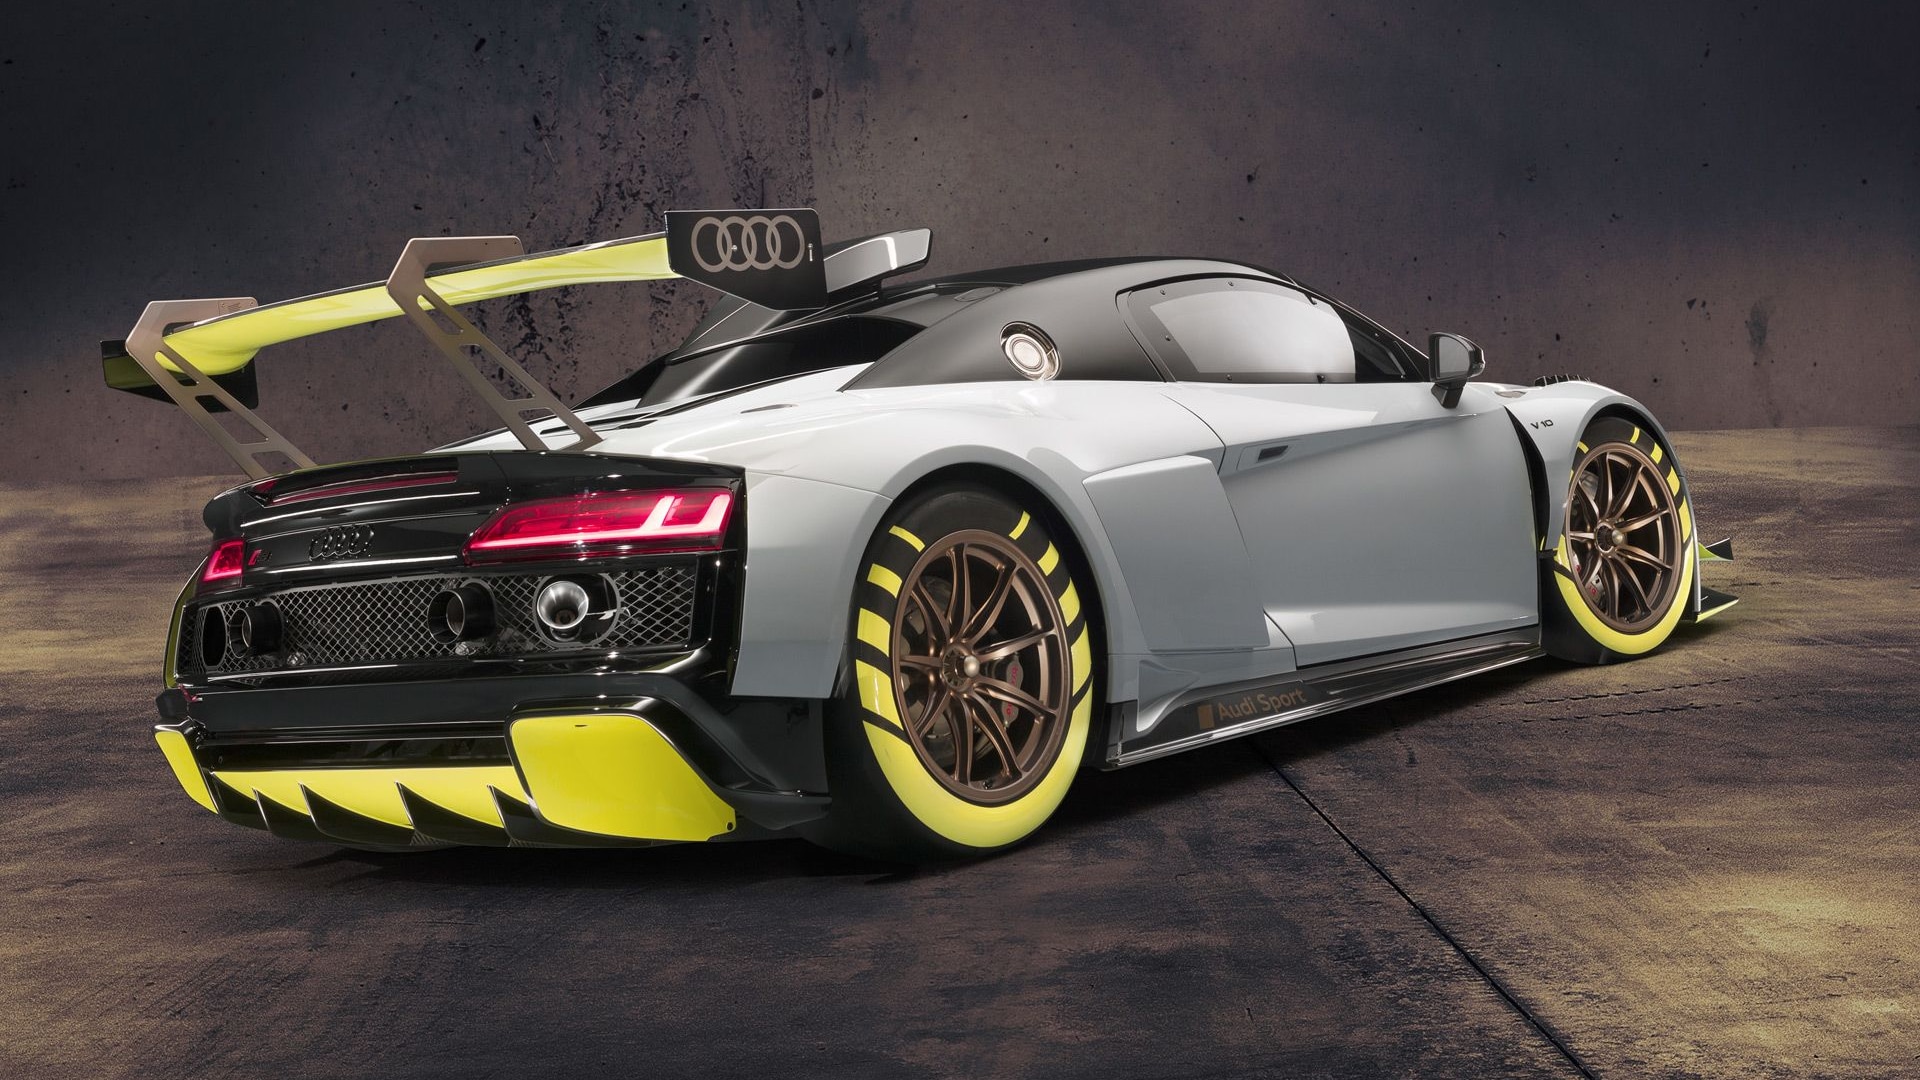 2020 Audi R8 LMS GT2 race car concept